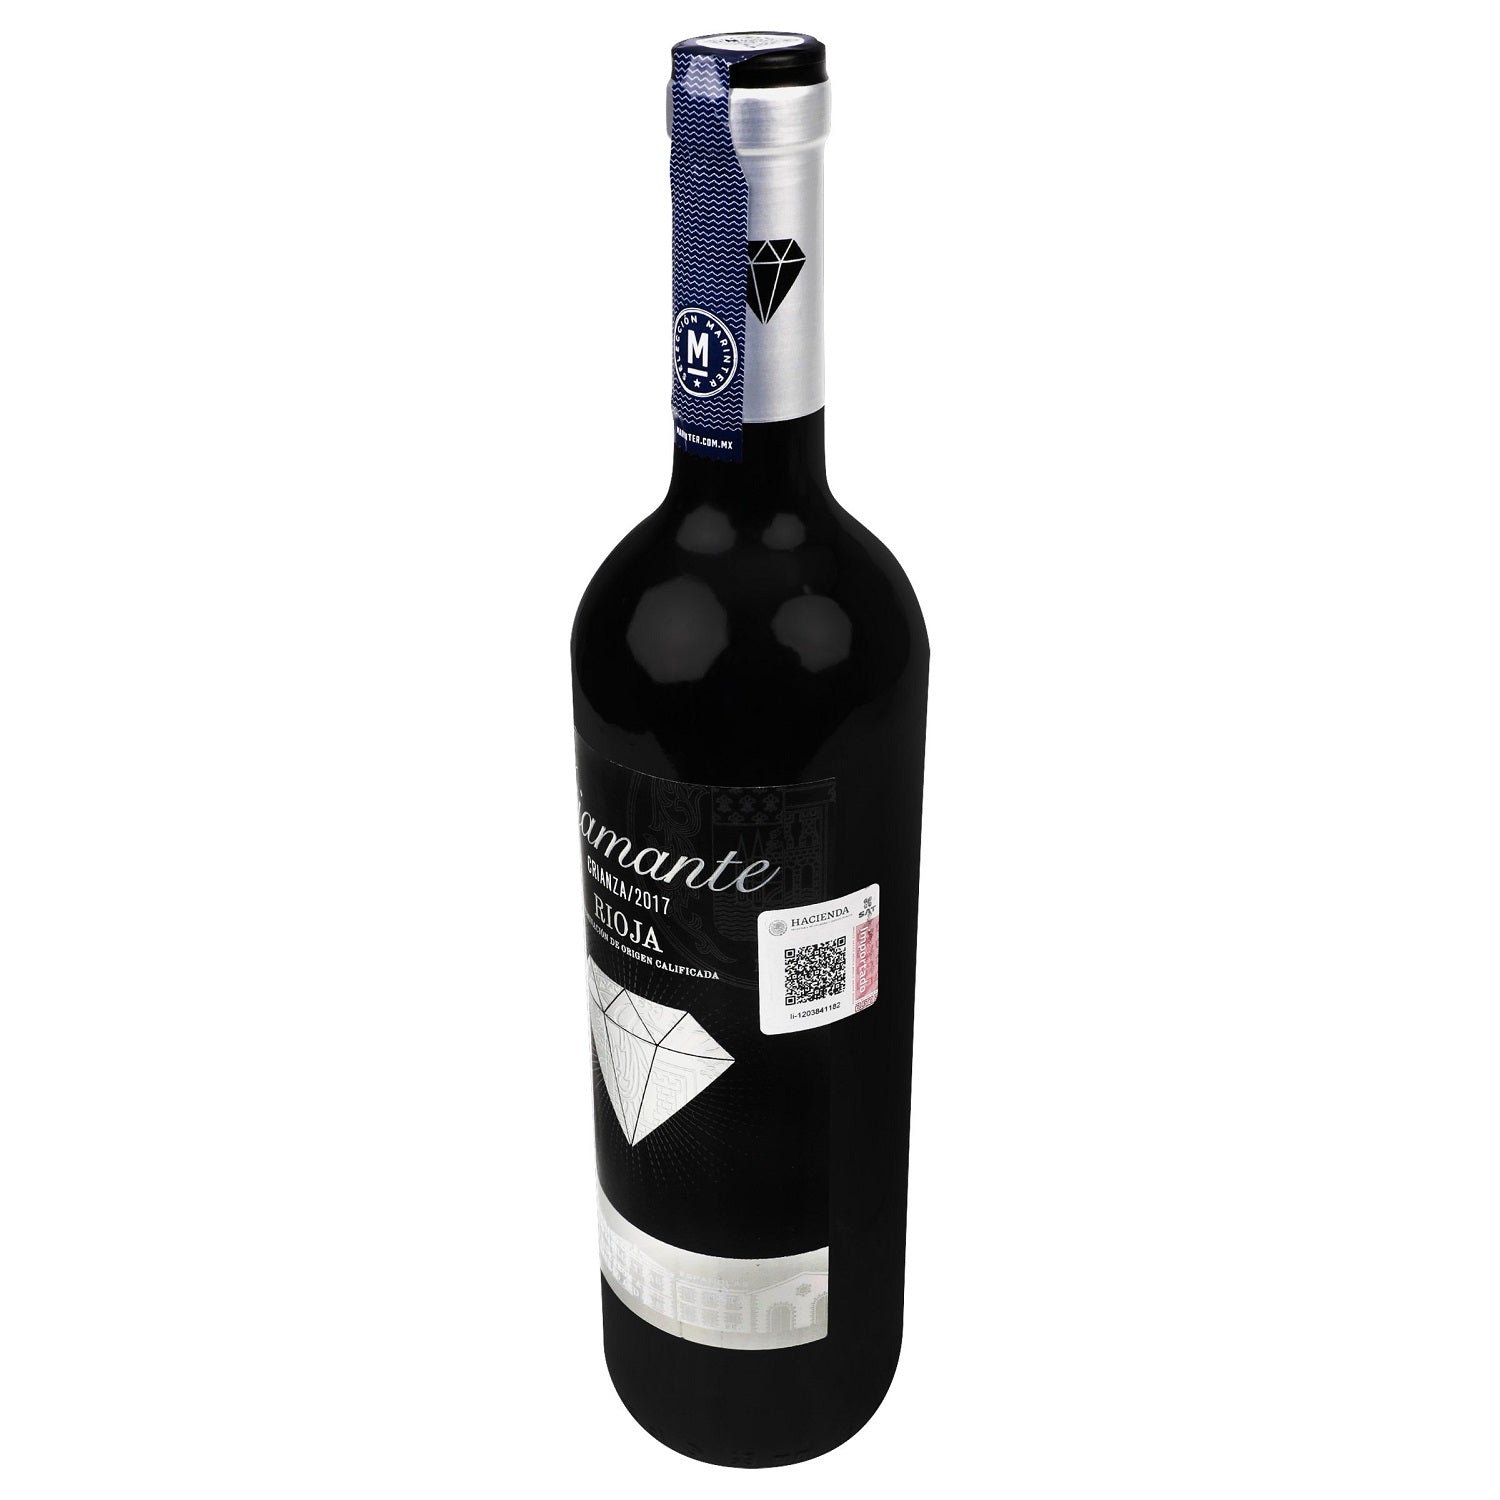 Vino Tinto - Diamante Crianza - 750 ml - España